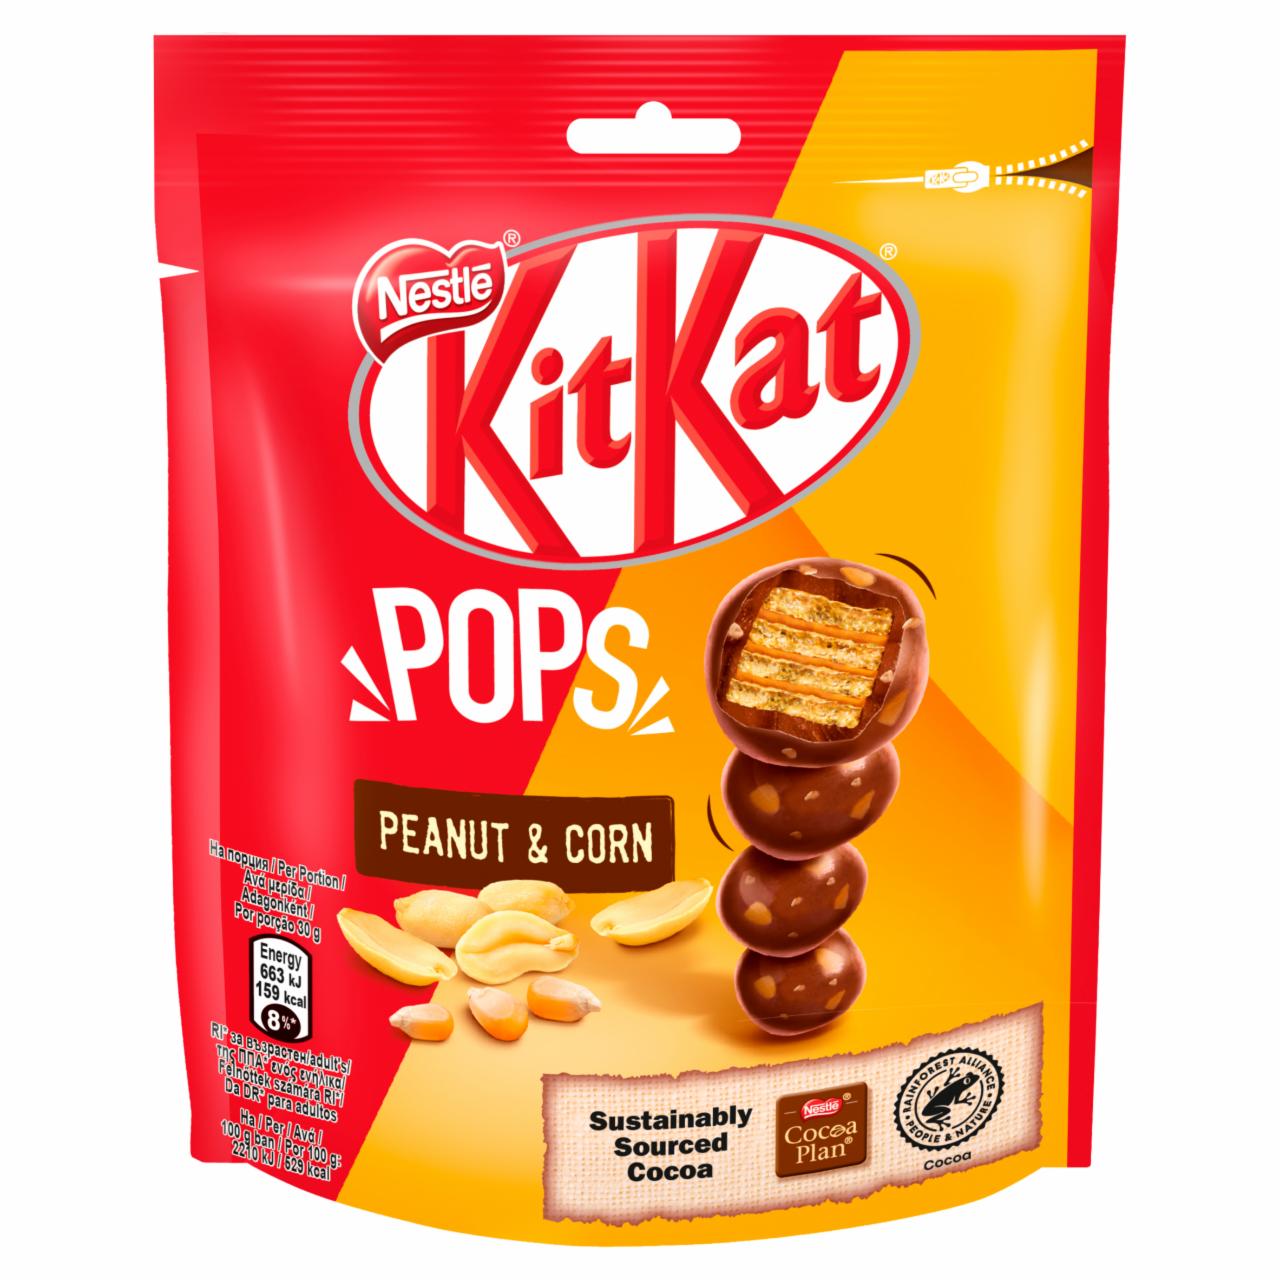 Képek - KitKat Pops ropogós ostya tejcsokoládéban, földimogyorópasztával és pirított kukoricával 110 g